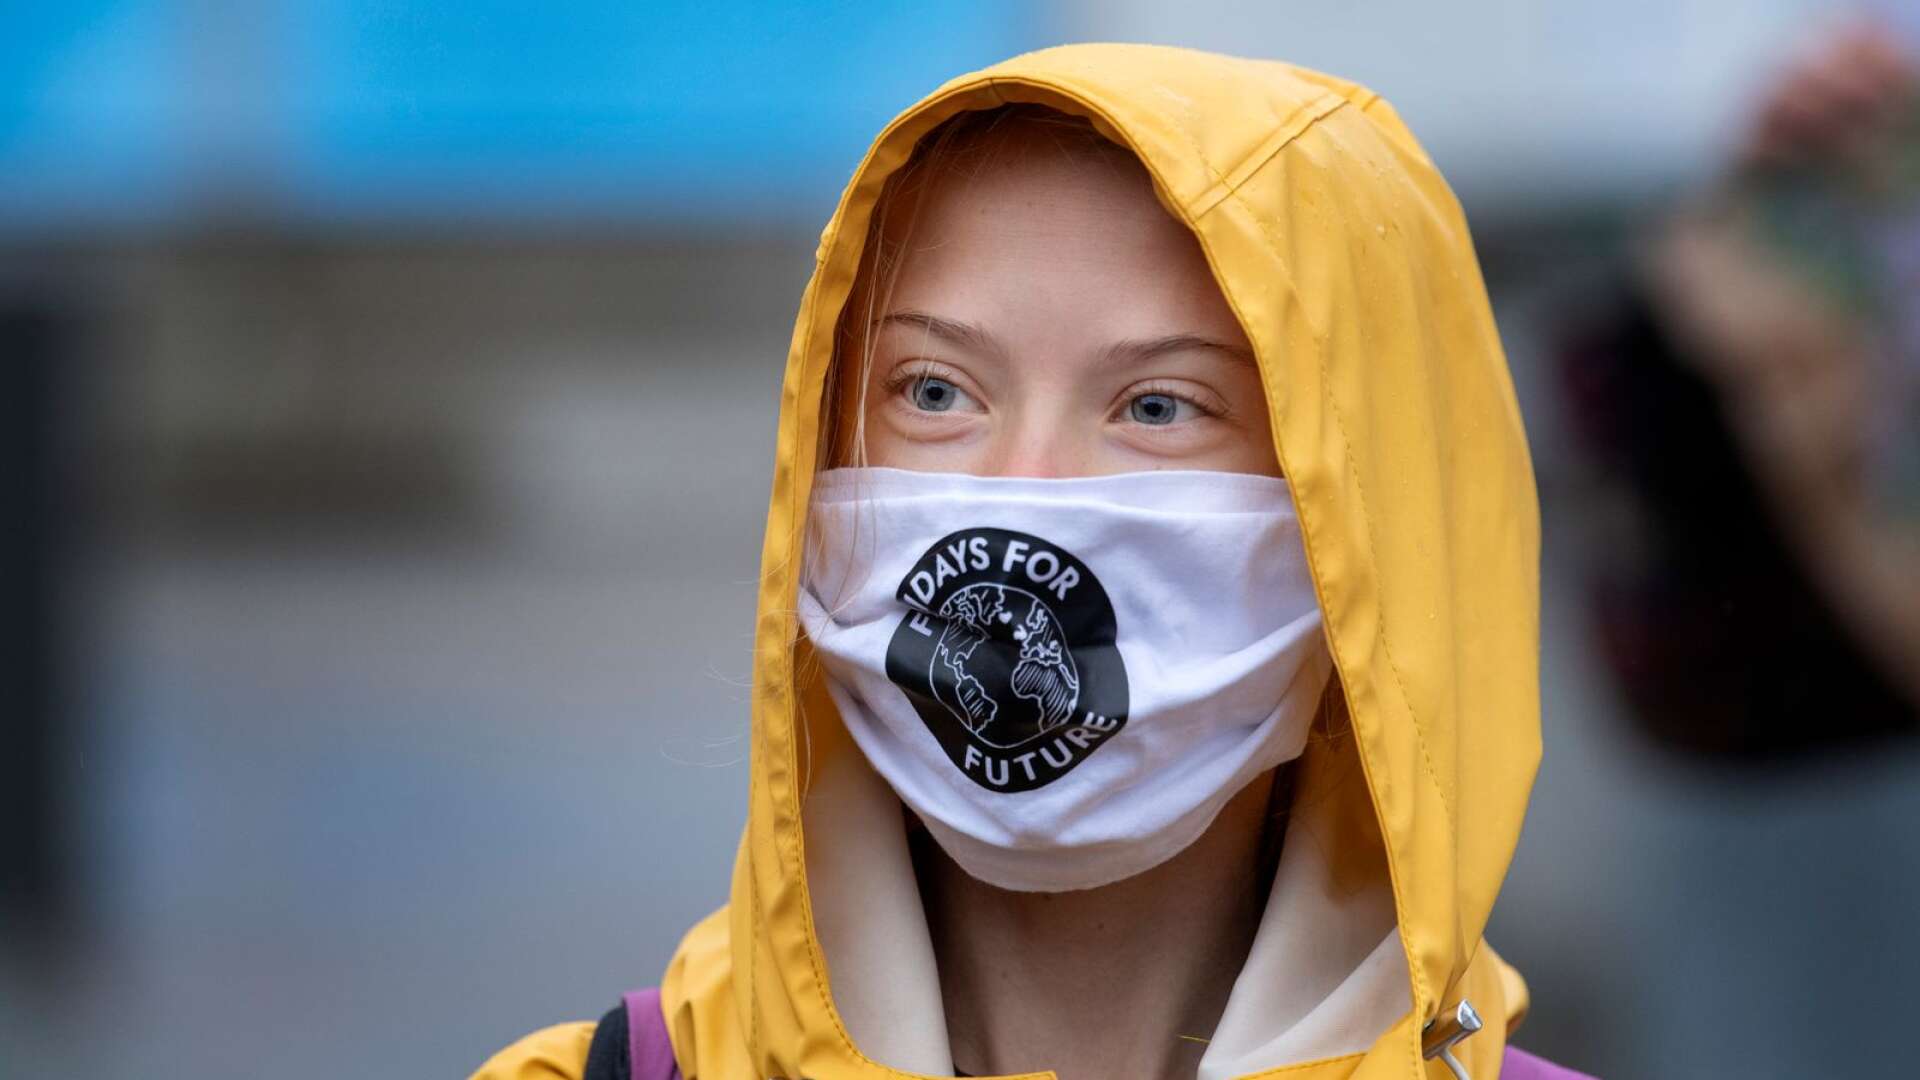 Miljöaktivisten Greta Thunberg har rätt i mycket, anser insändarskribenten.